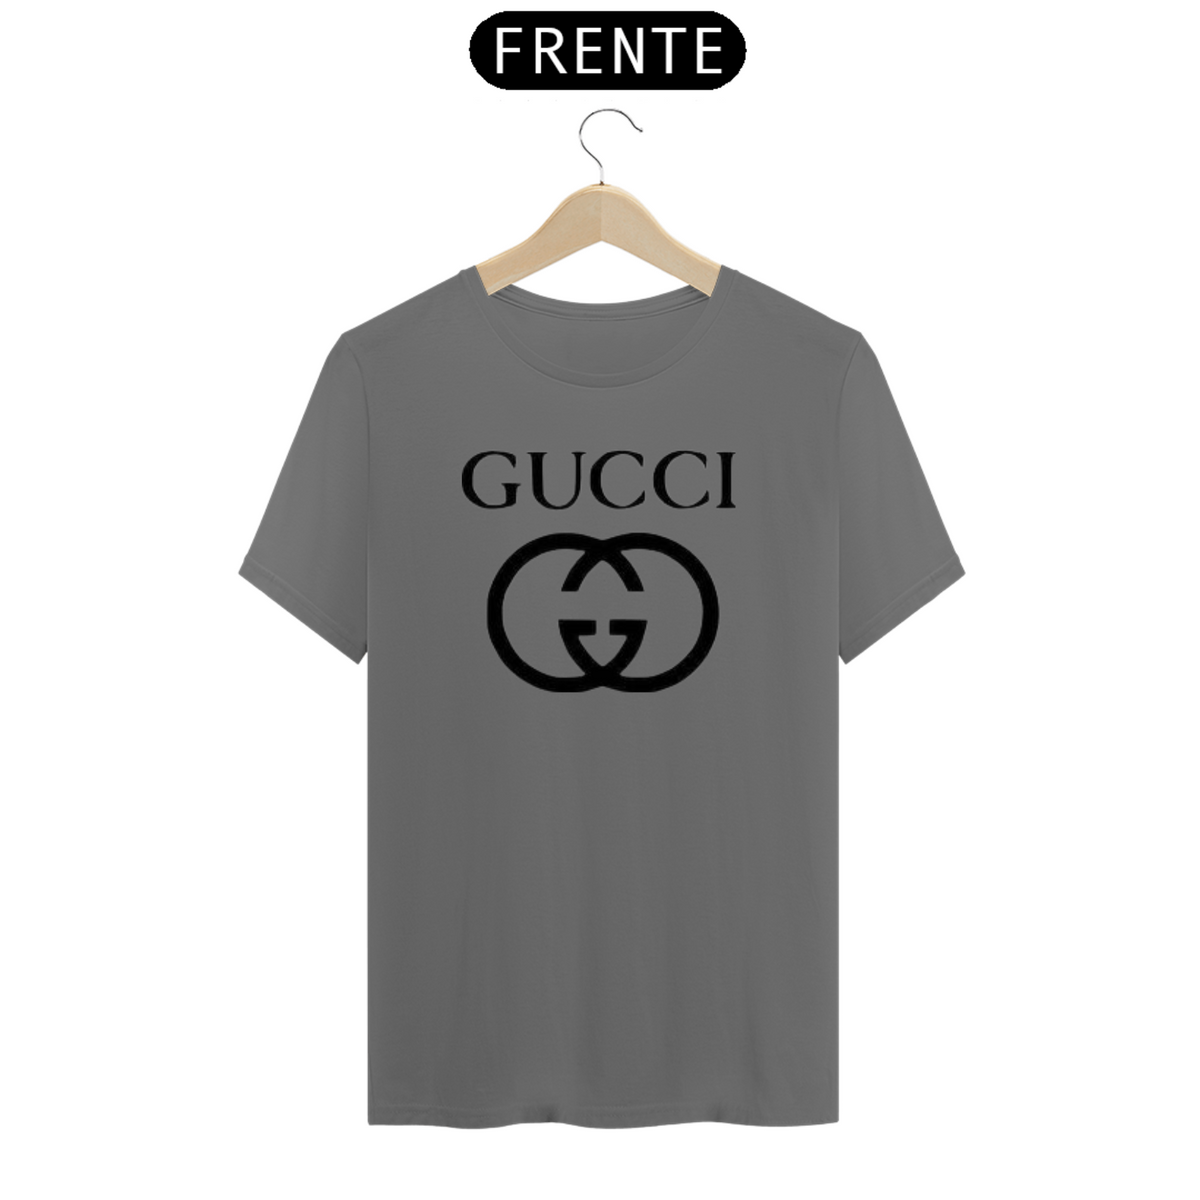 Nome do produto: Camisa da Gucci clássica